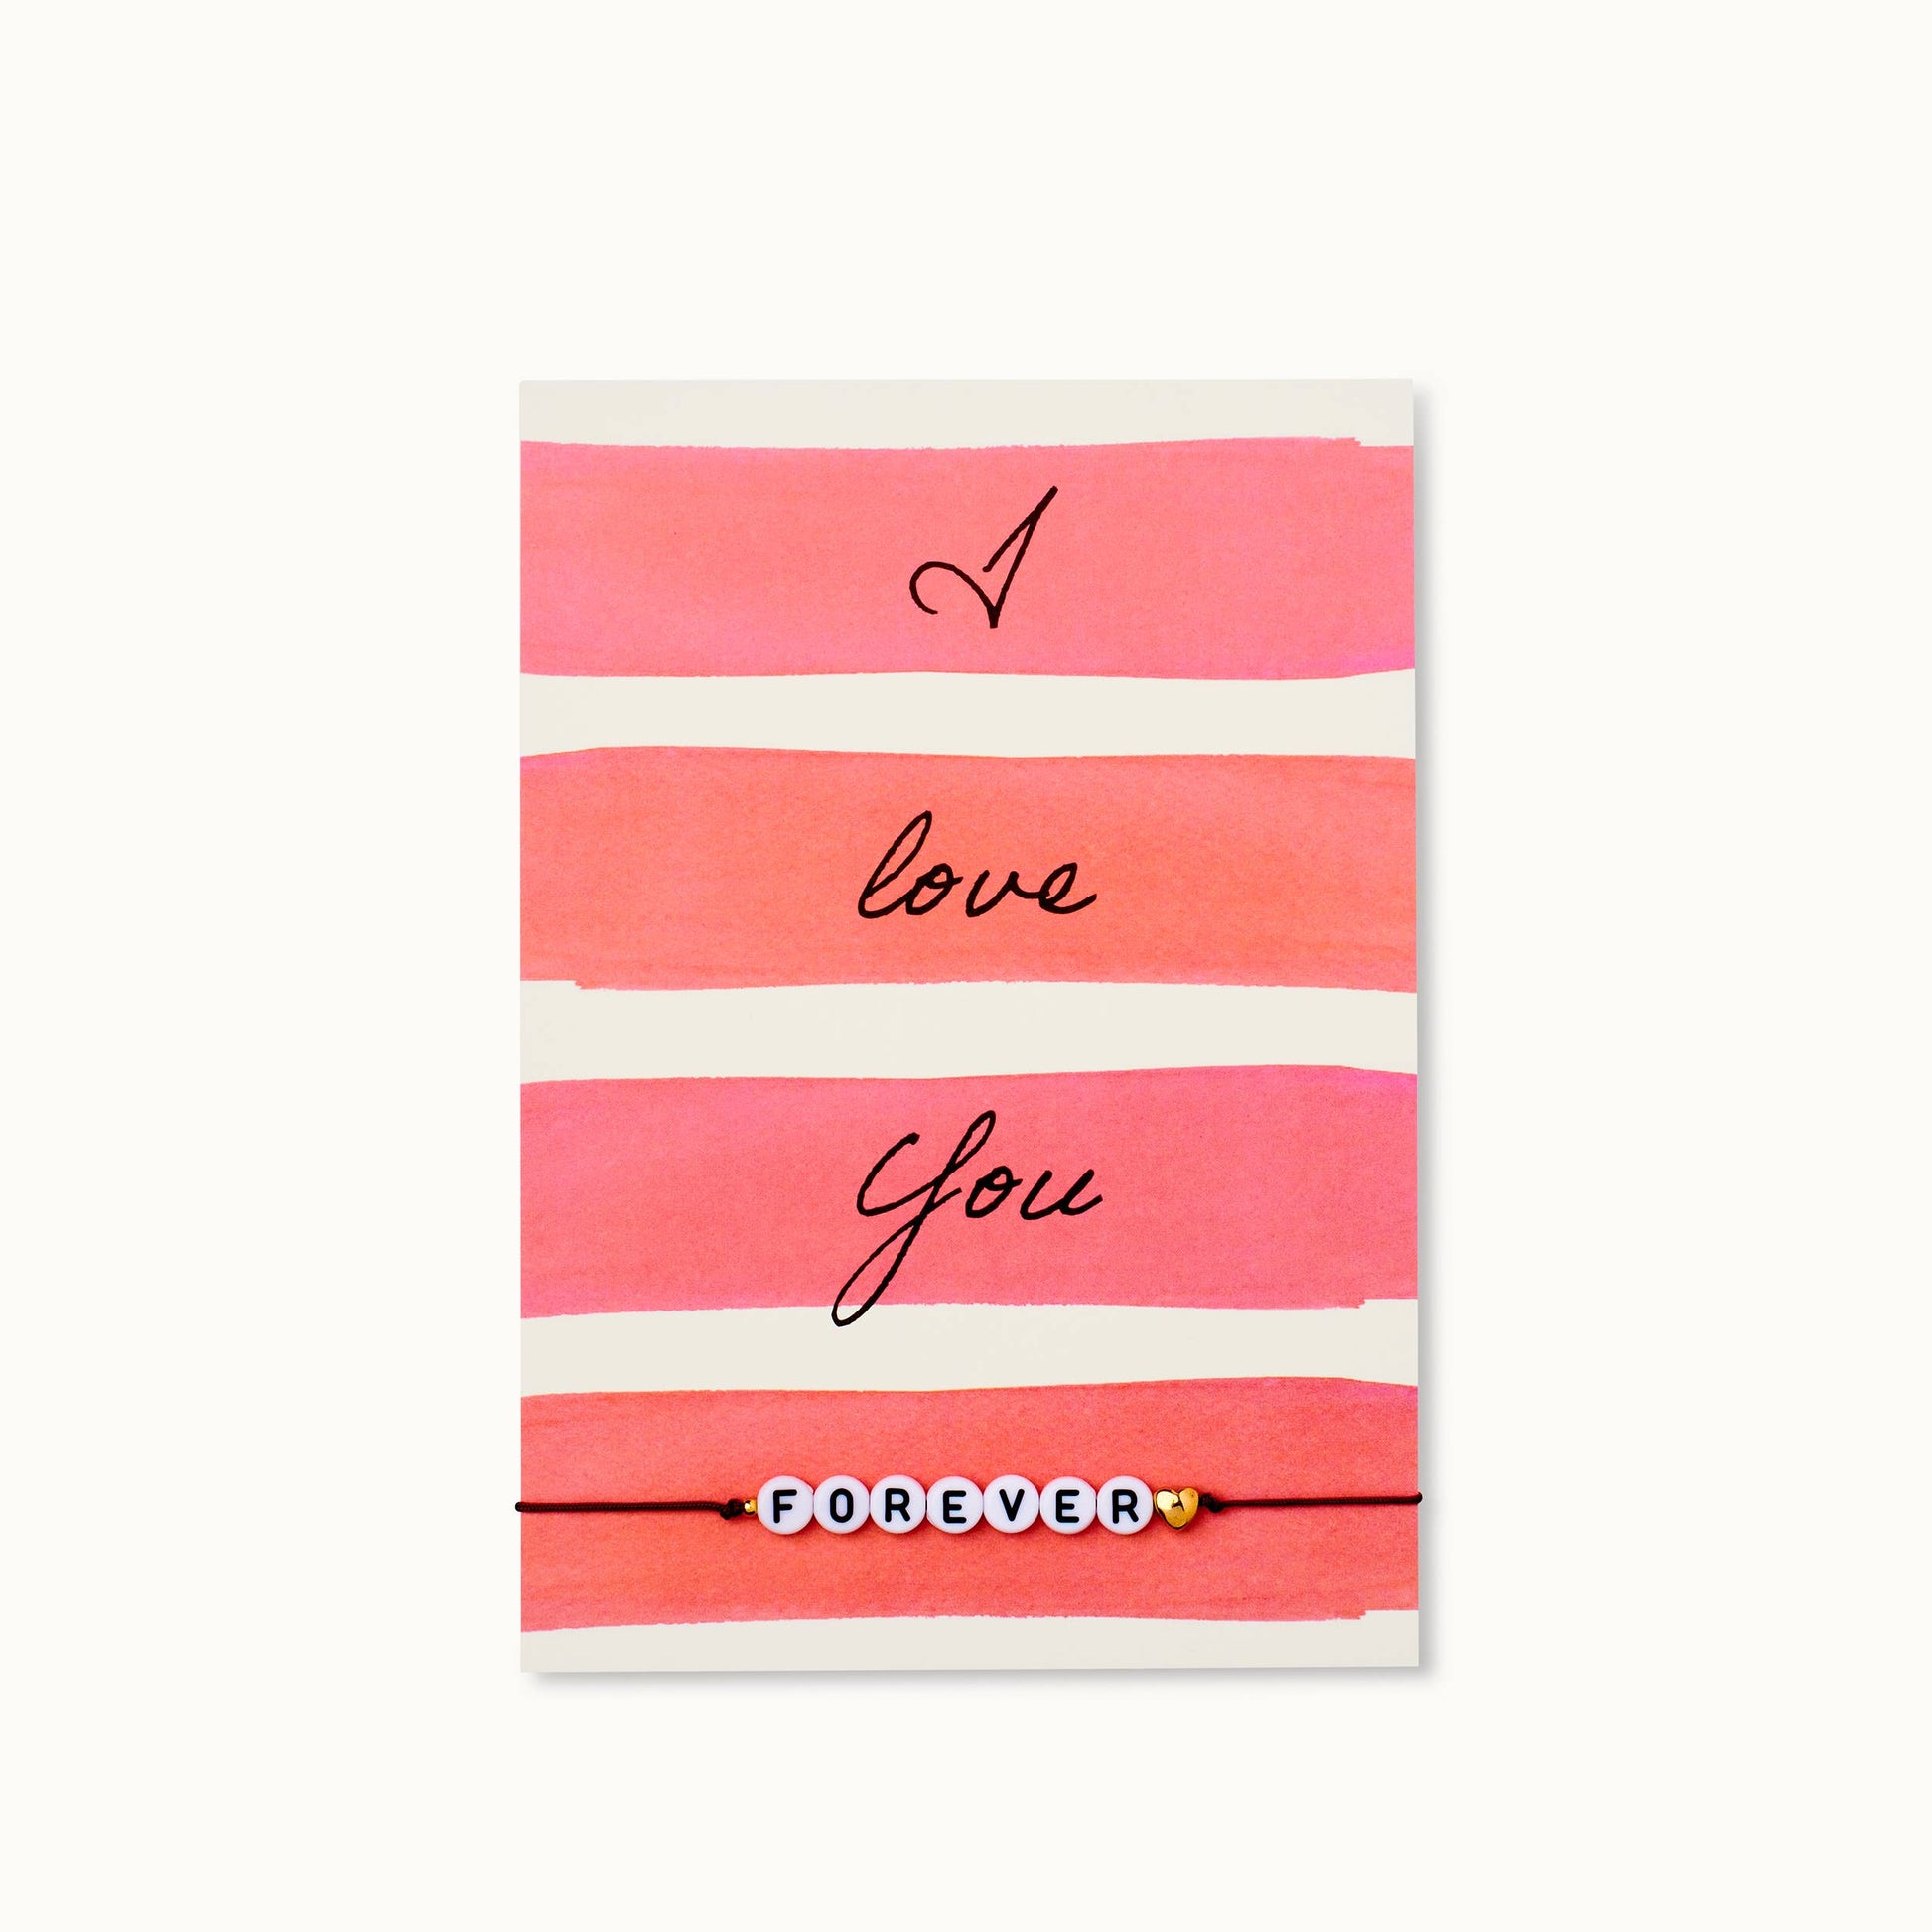 Bracelet-Card: I love you FOREVER - Grußkarten - Who said